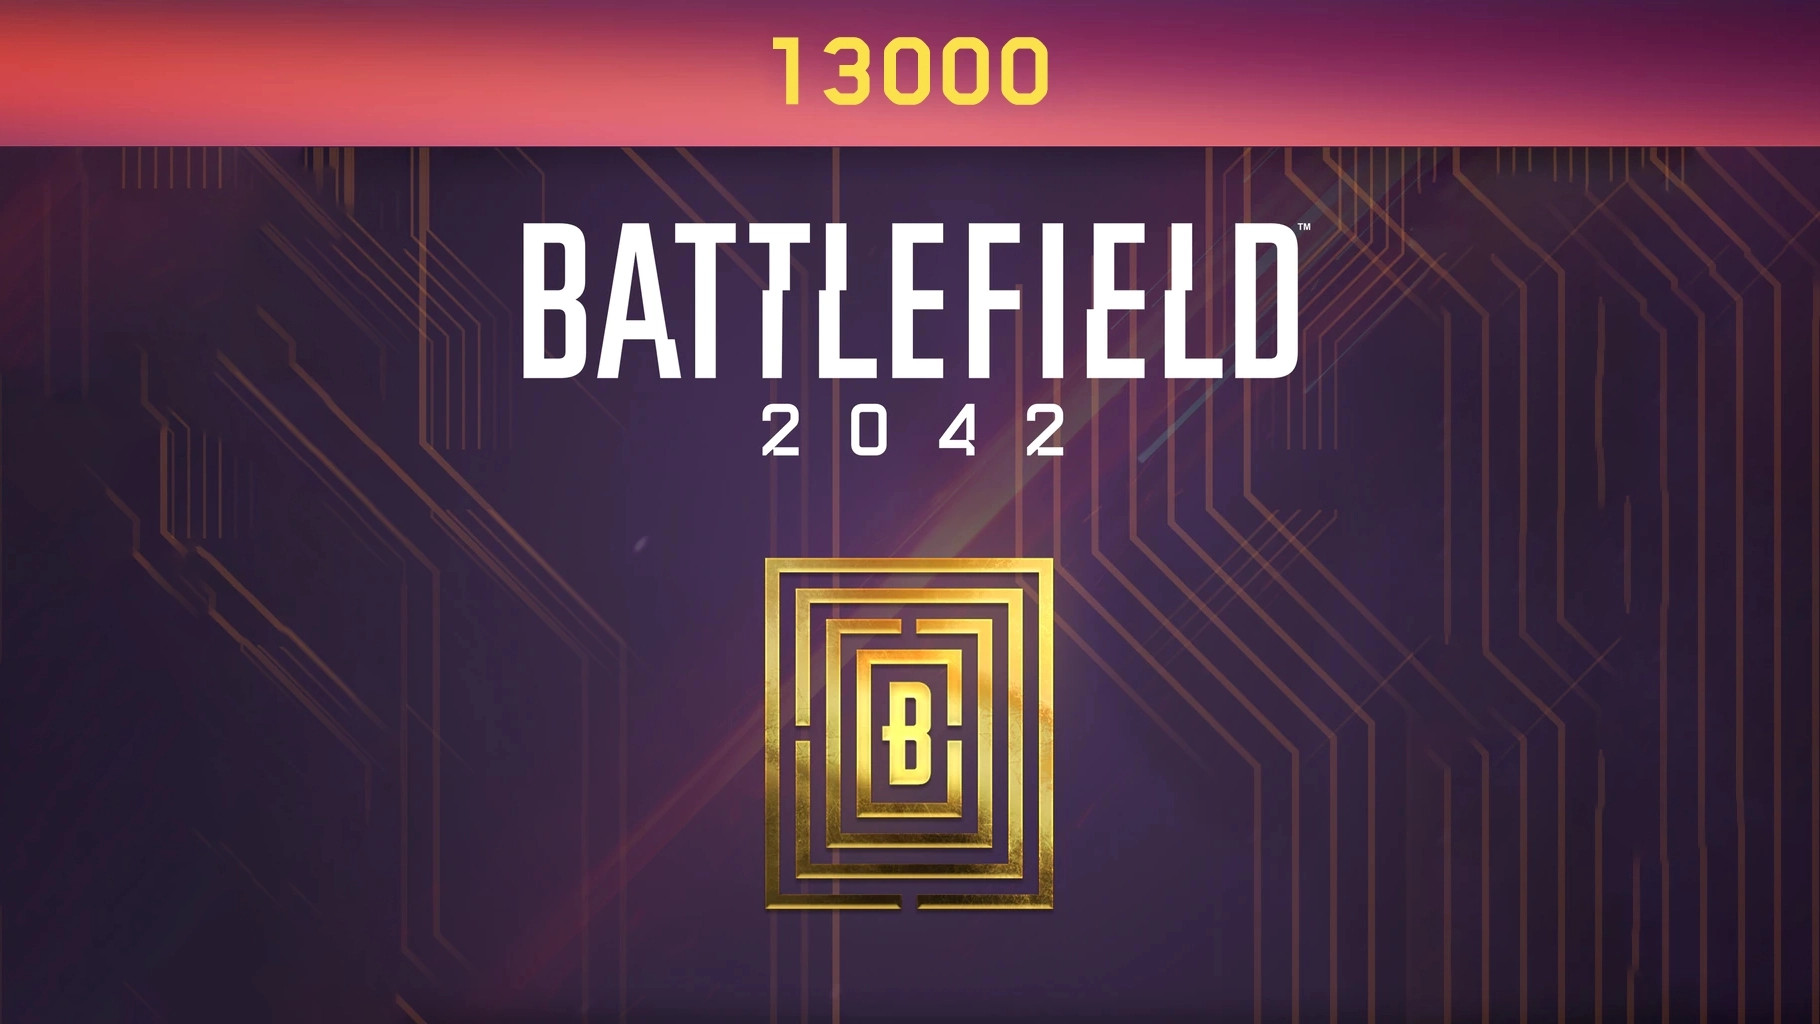 Battlefield 2042 - 13000 BFC Balance XBOX One / Xbox Series X|S CD Key 96.6 $